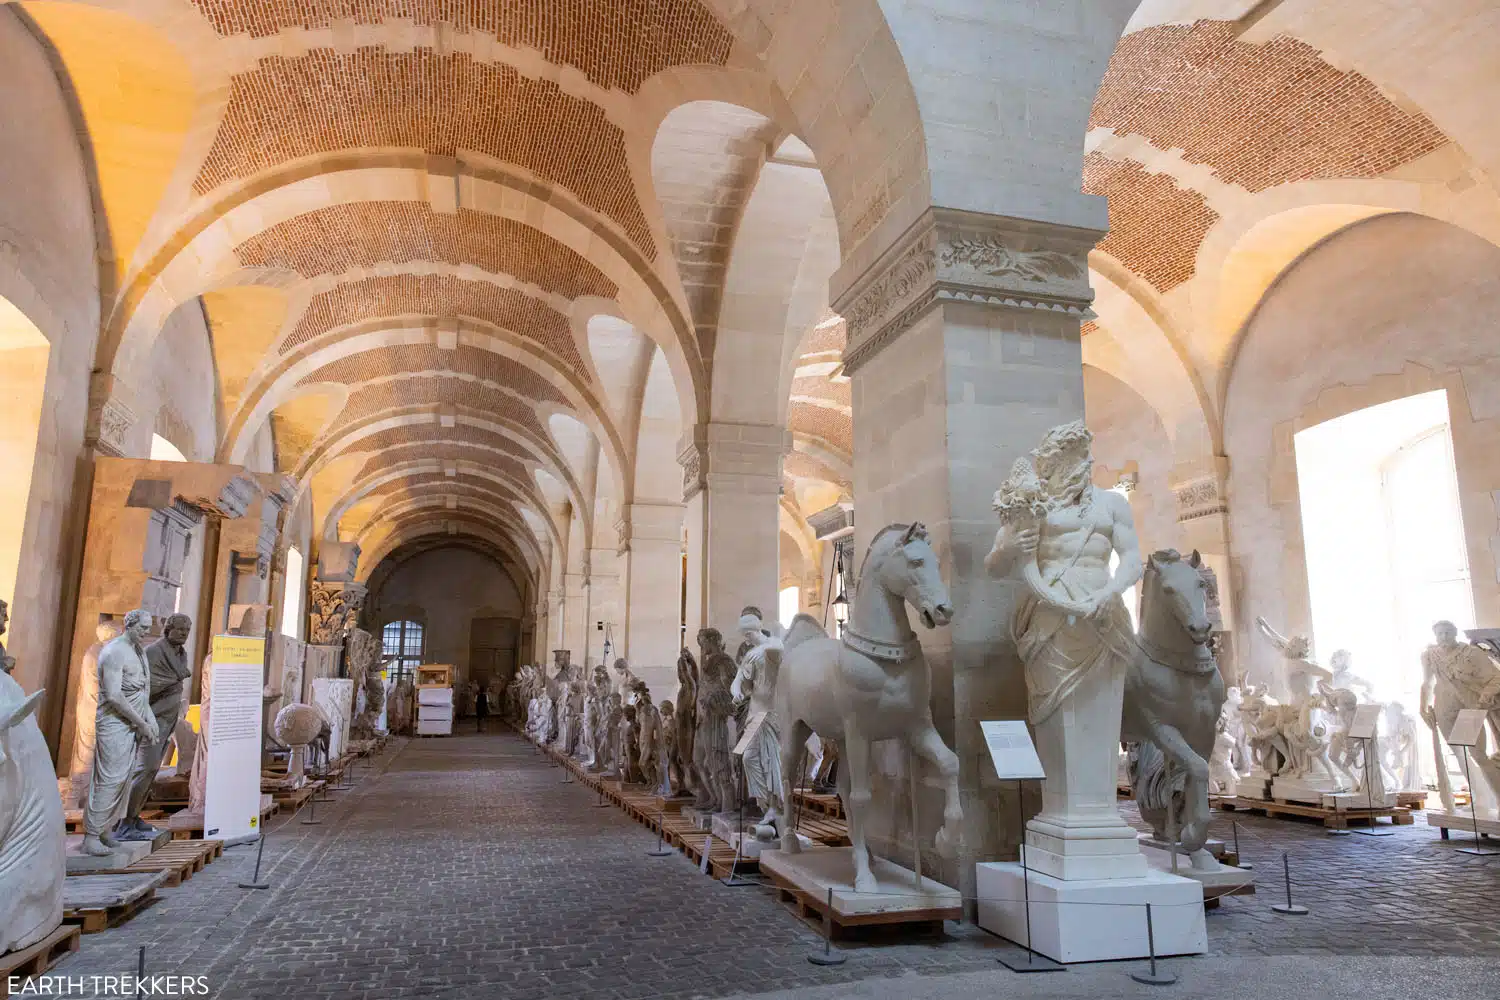 Gallery of Sculptures Versailles